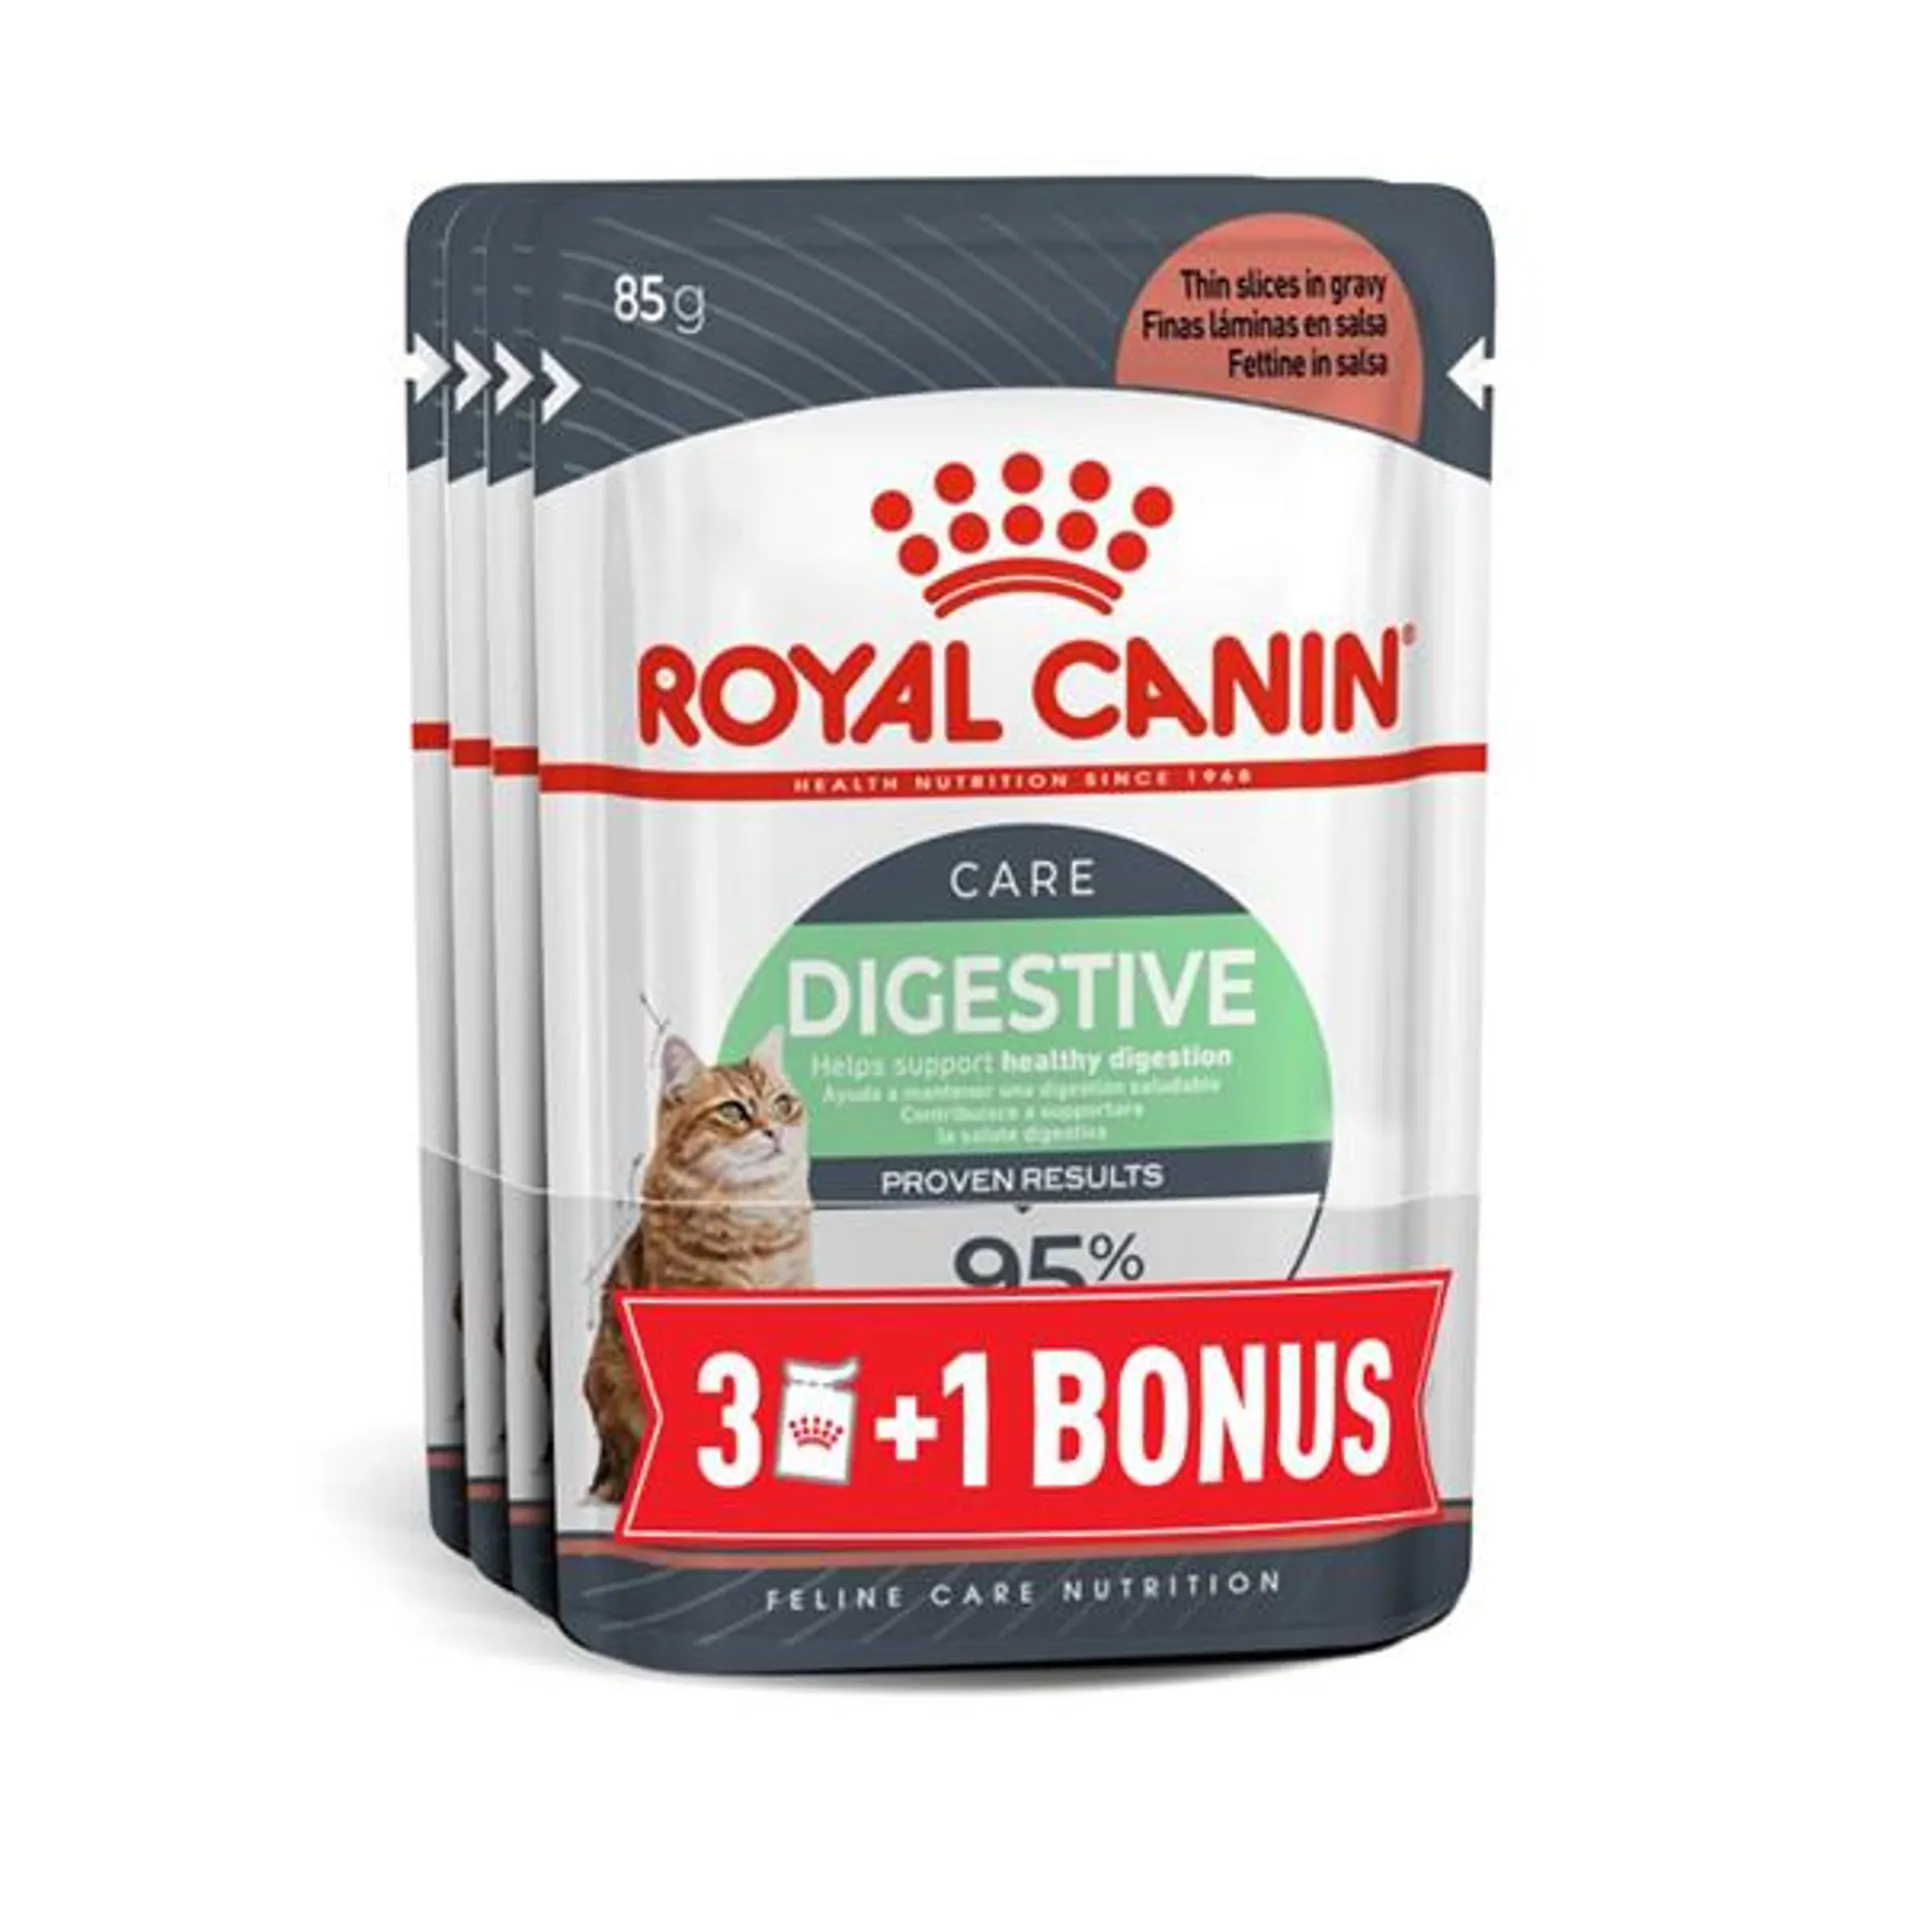 ROYAL CANIN vrećica za mačke FCN Digestive Sensitive u umaku 85g, 3+1 BONUS